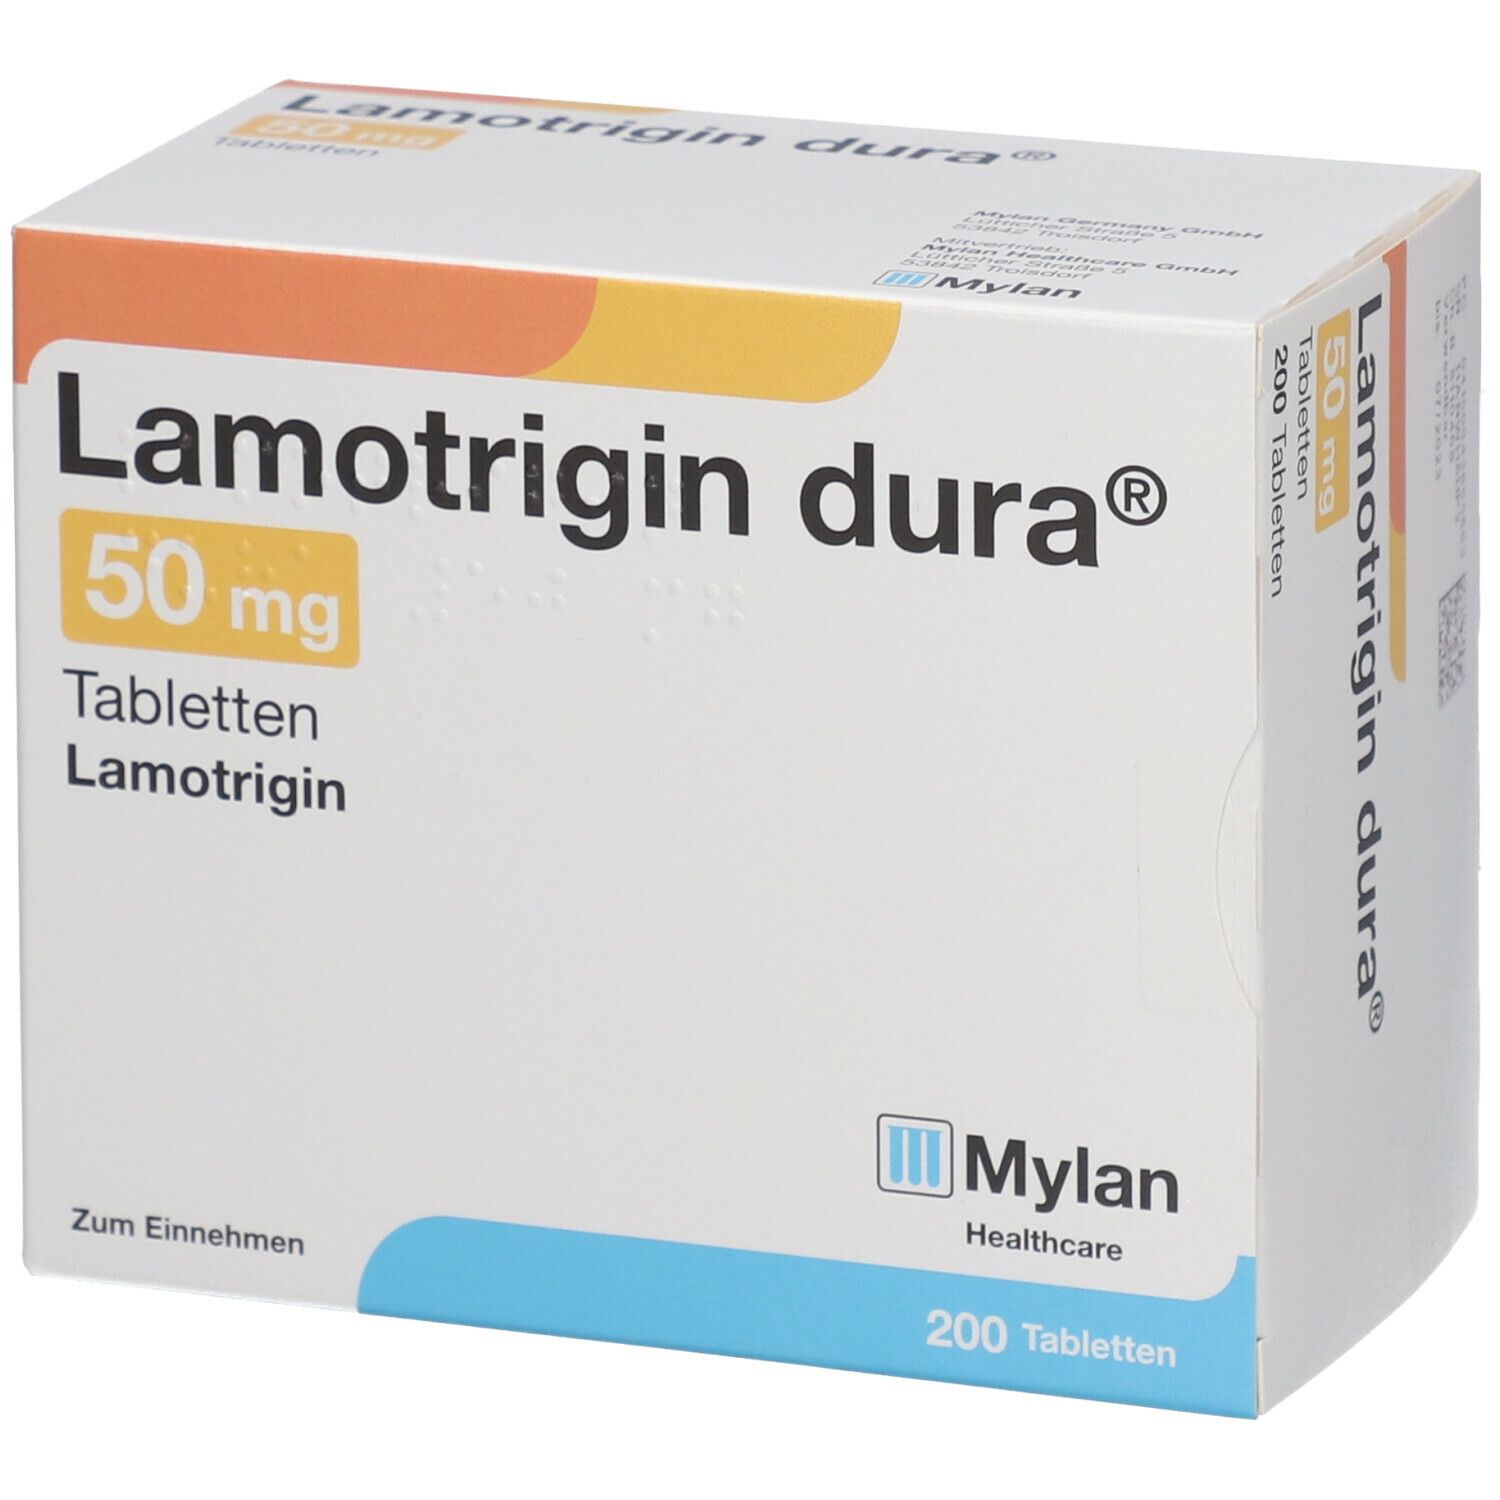 Lamotrigin dura® 50 mg